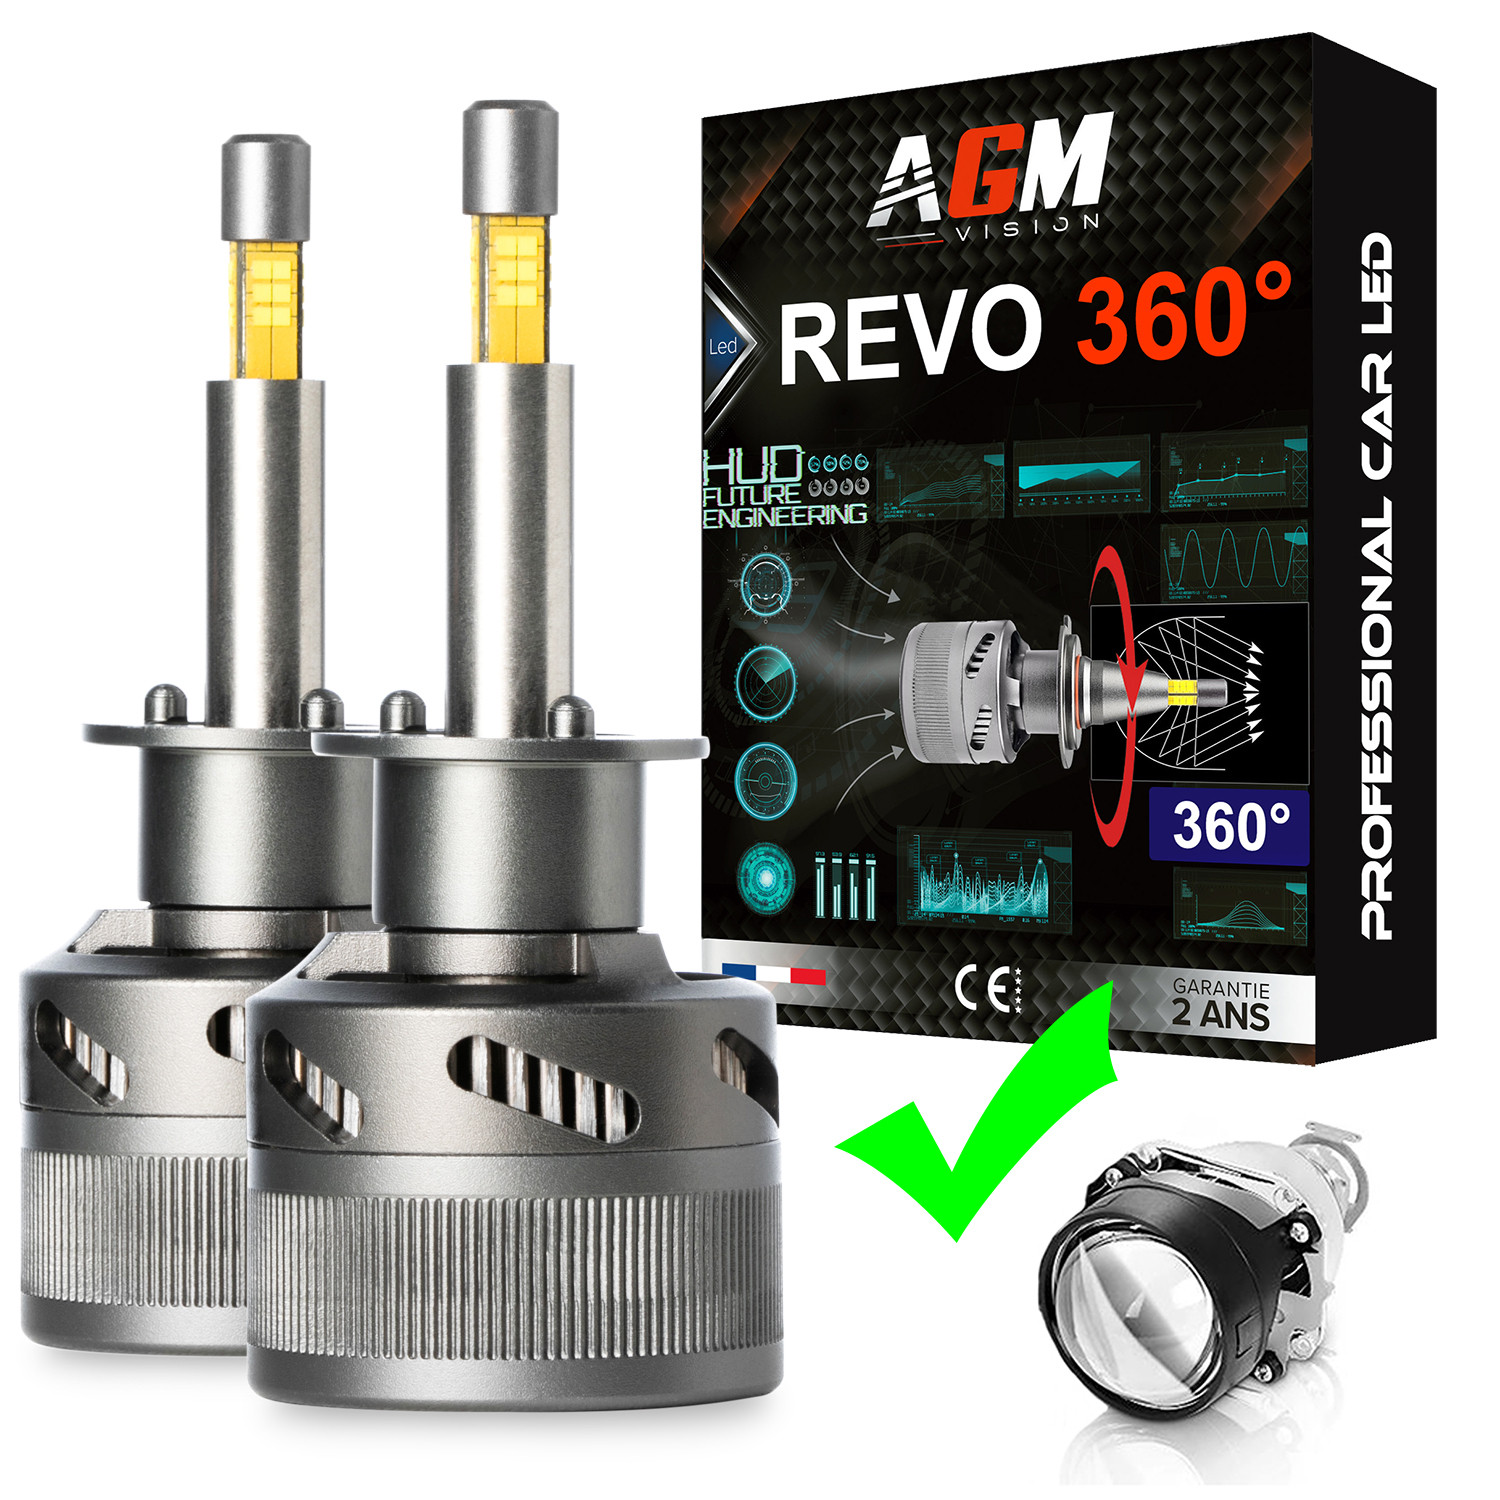 KIT AMPOULES LED H1 REVO 360° - AGM VISION